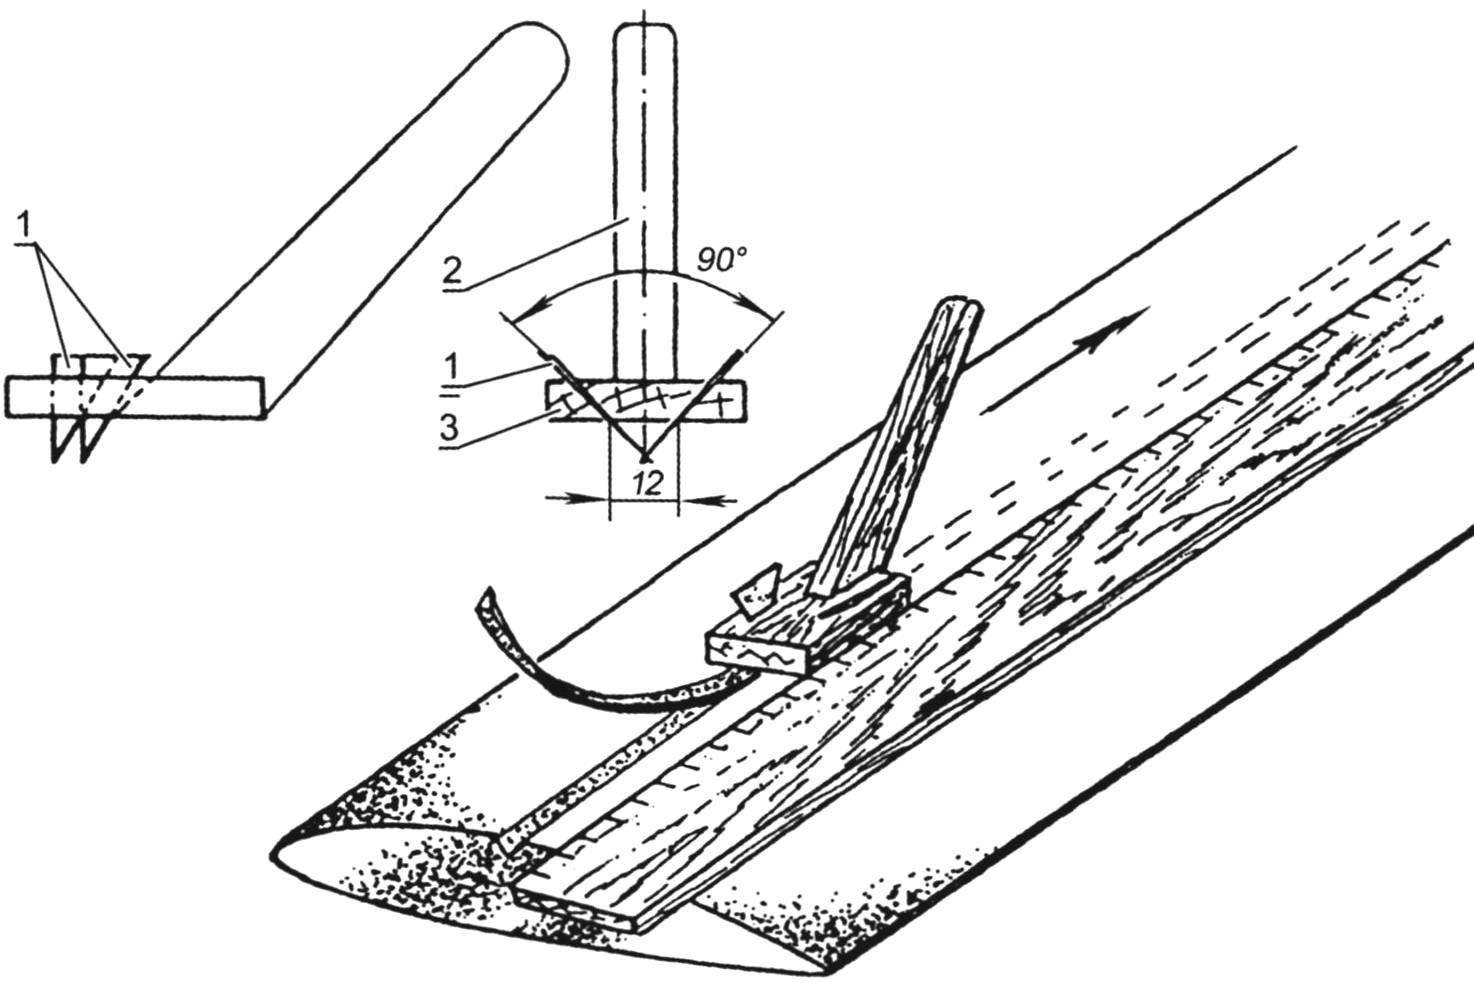 Струг для прорезания канавок на сердечнике крыла под полки лонжерона (внизу справа - использование струга)